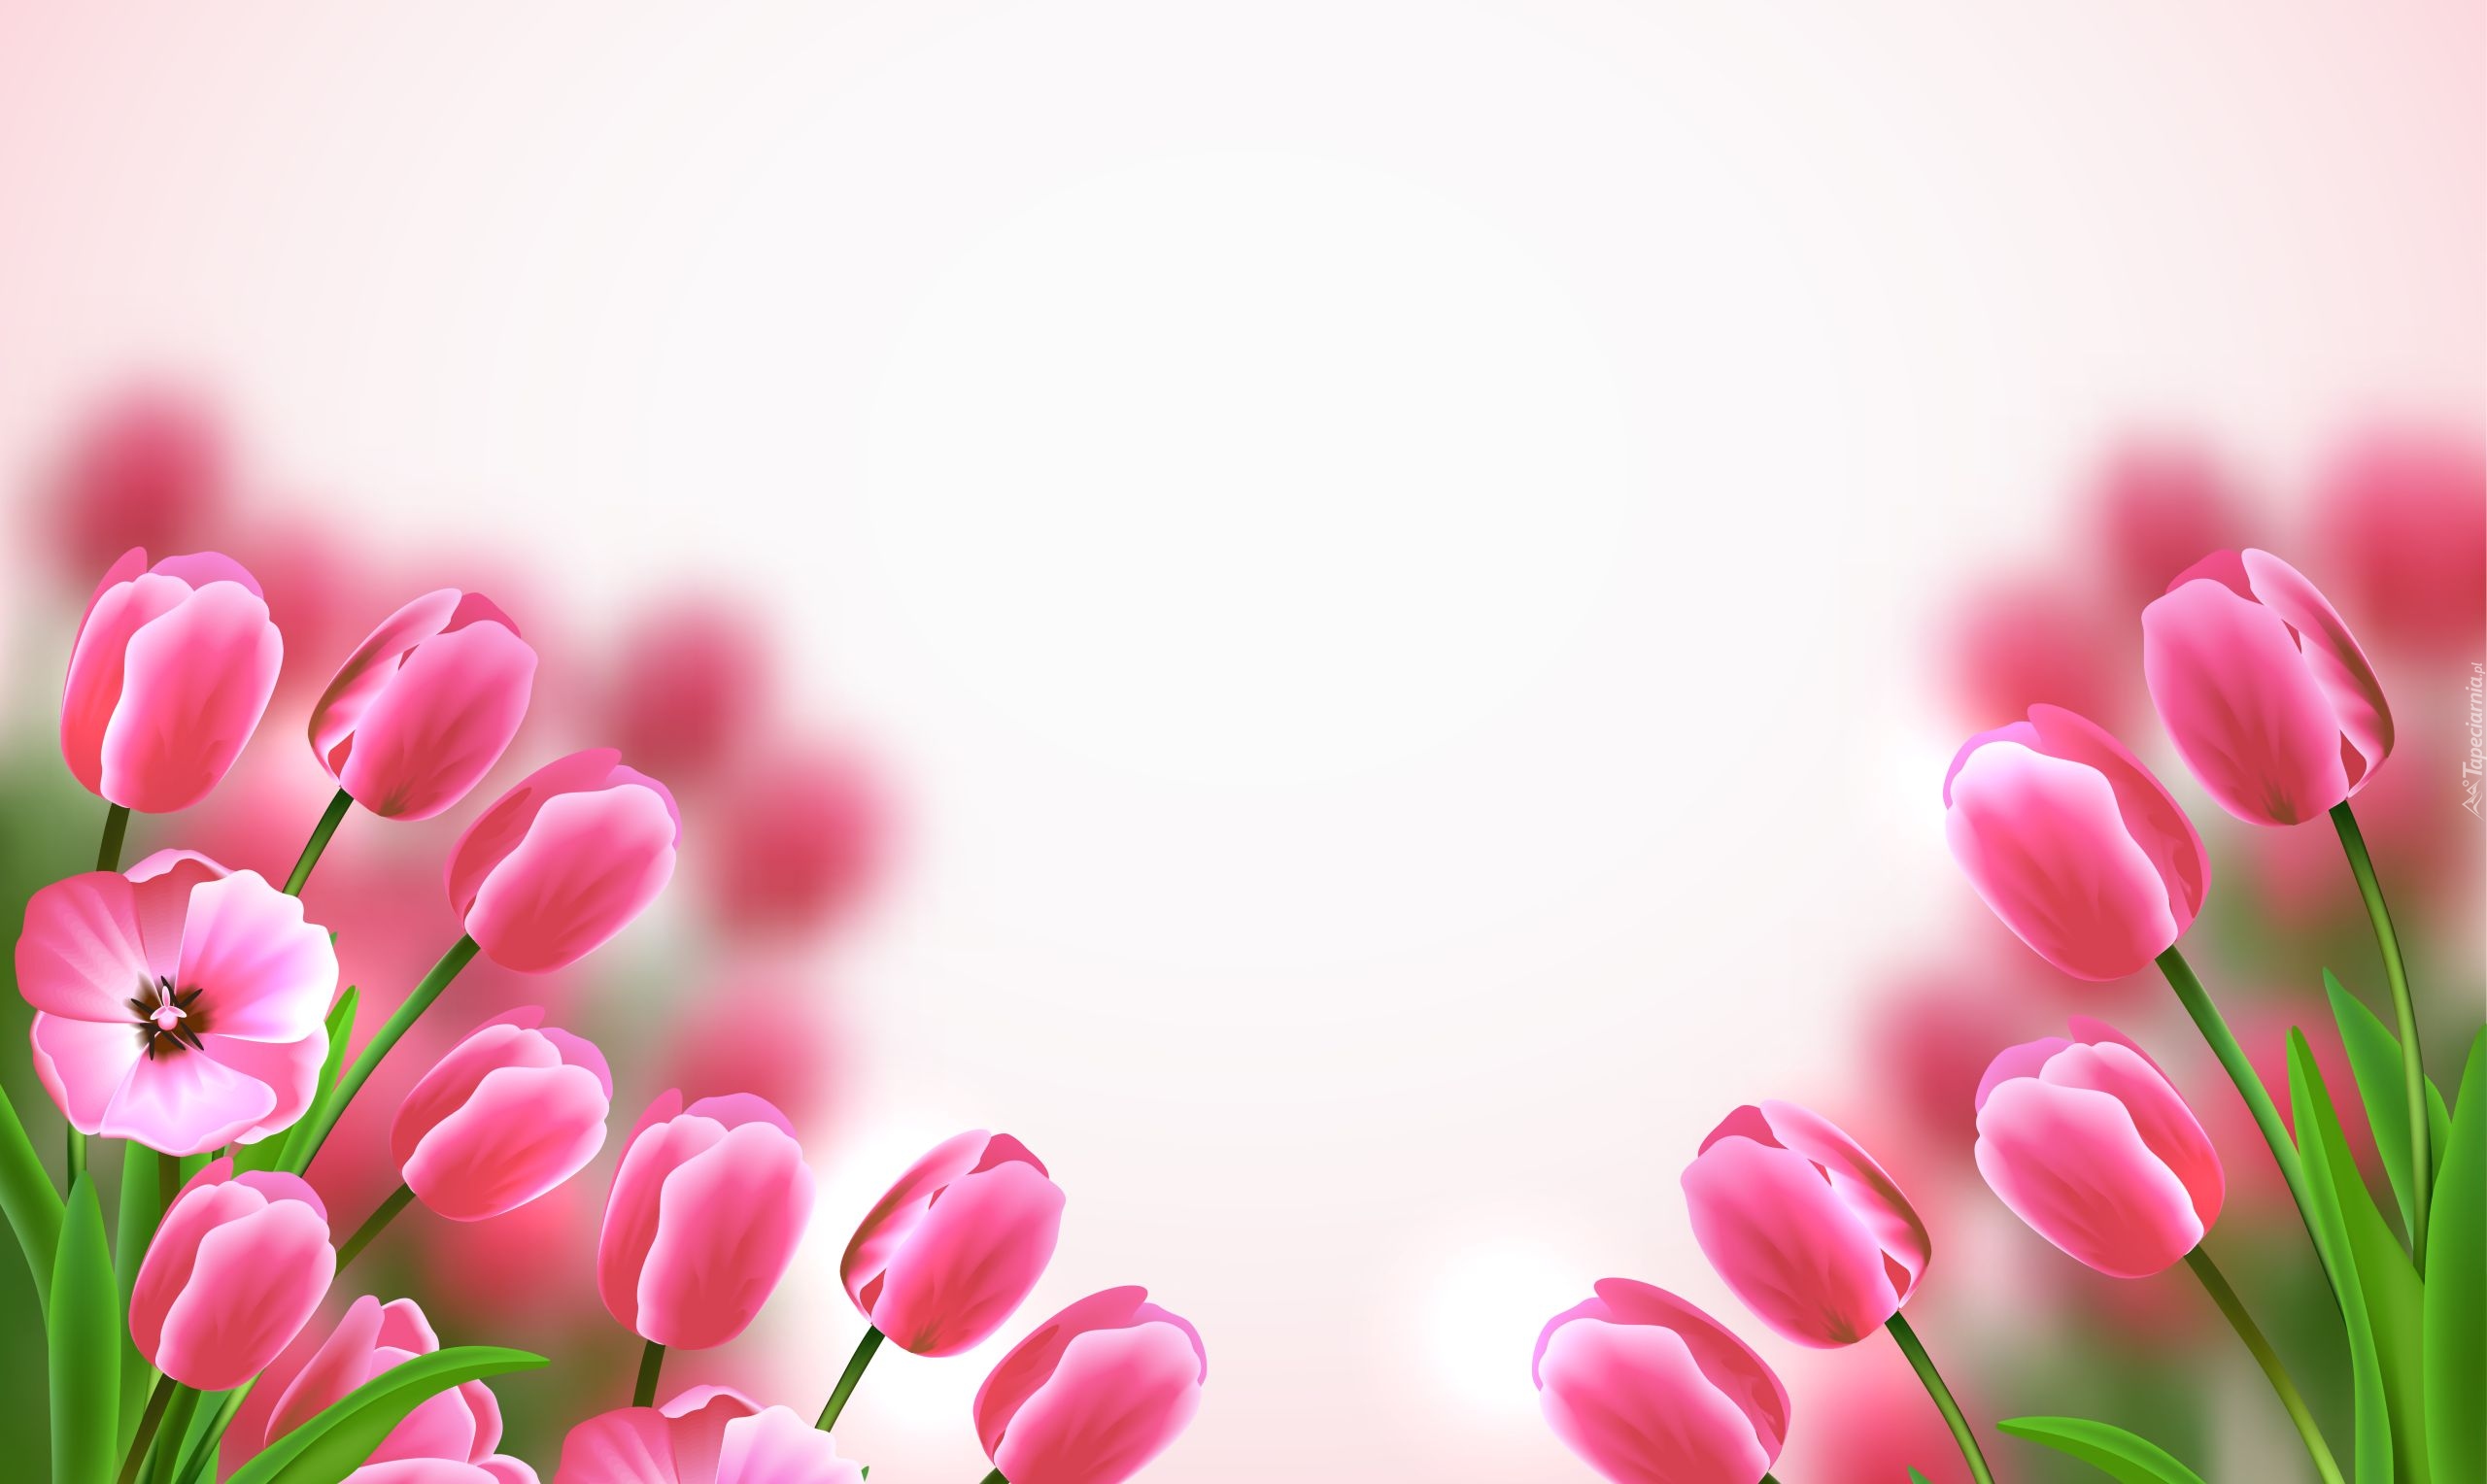 Kwiaty, Różowe, Tulipany, 2D